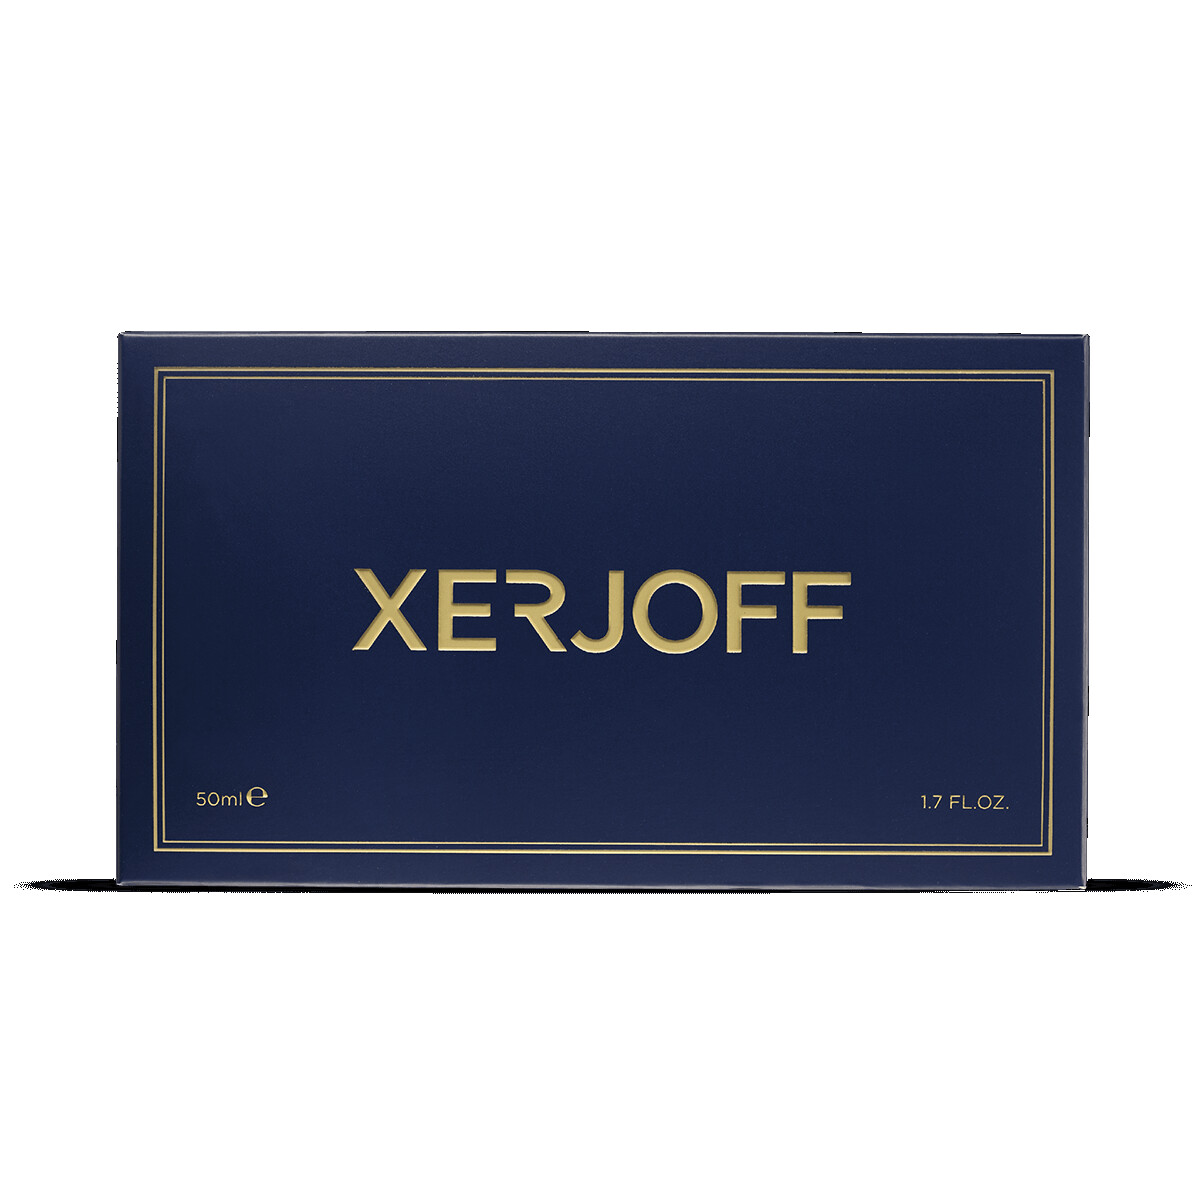 Xerjoff JOIN THE CLUB 40 Knots Eau de Parfum 50ml